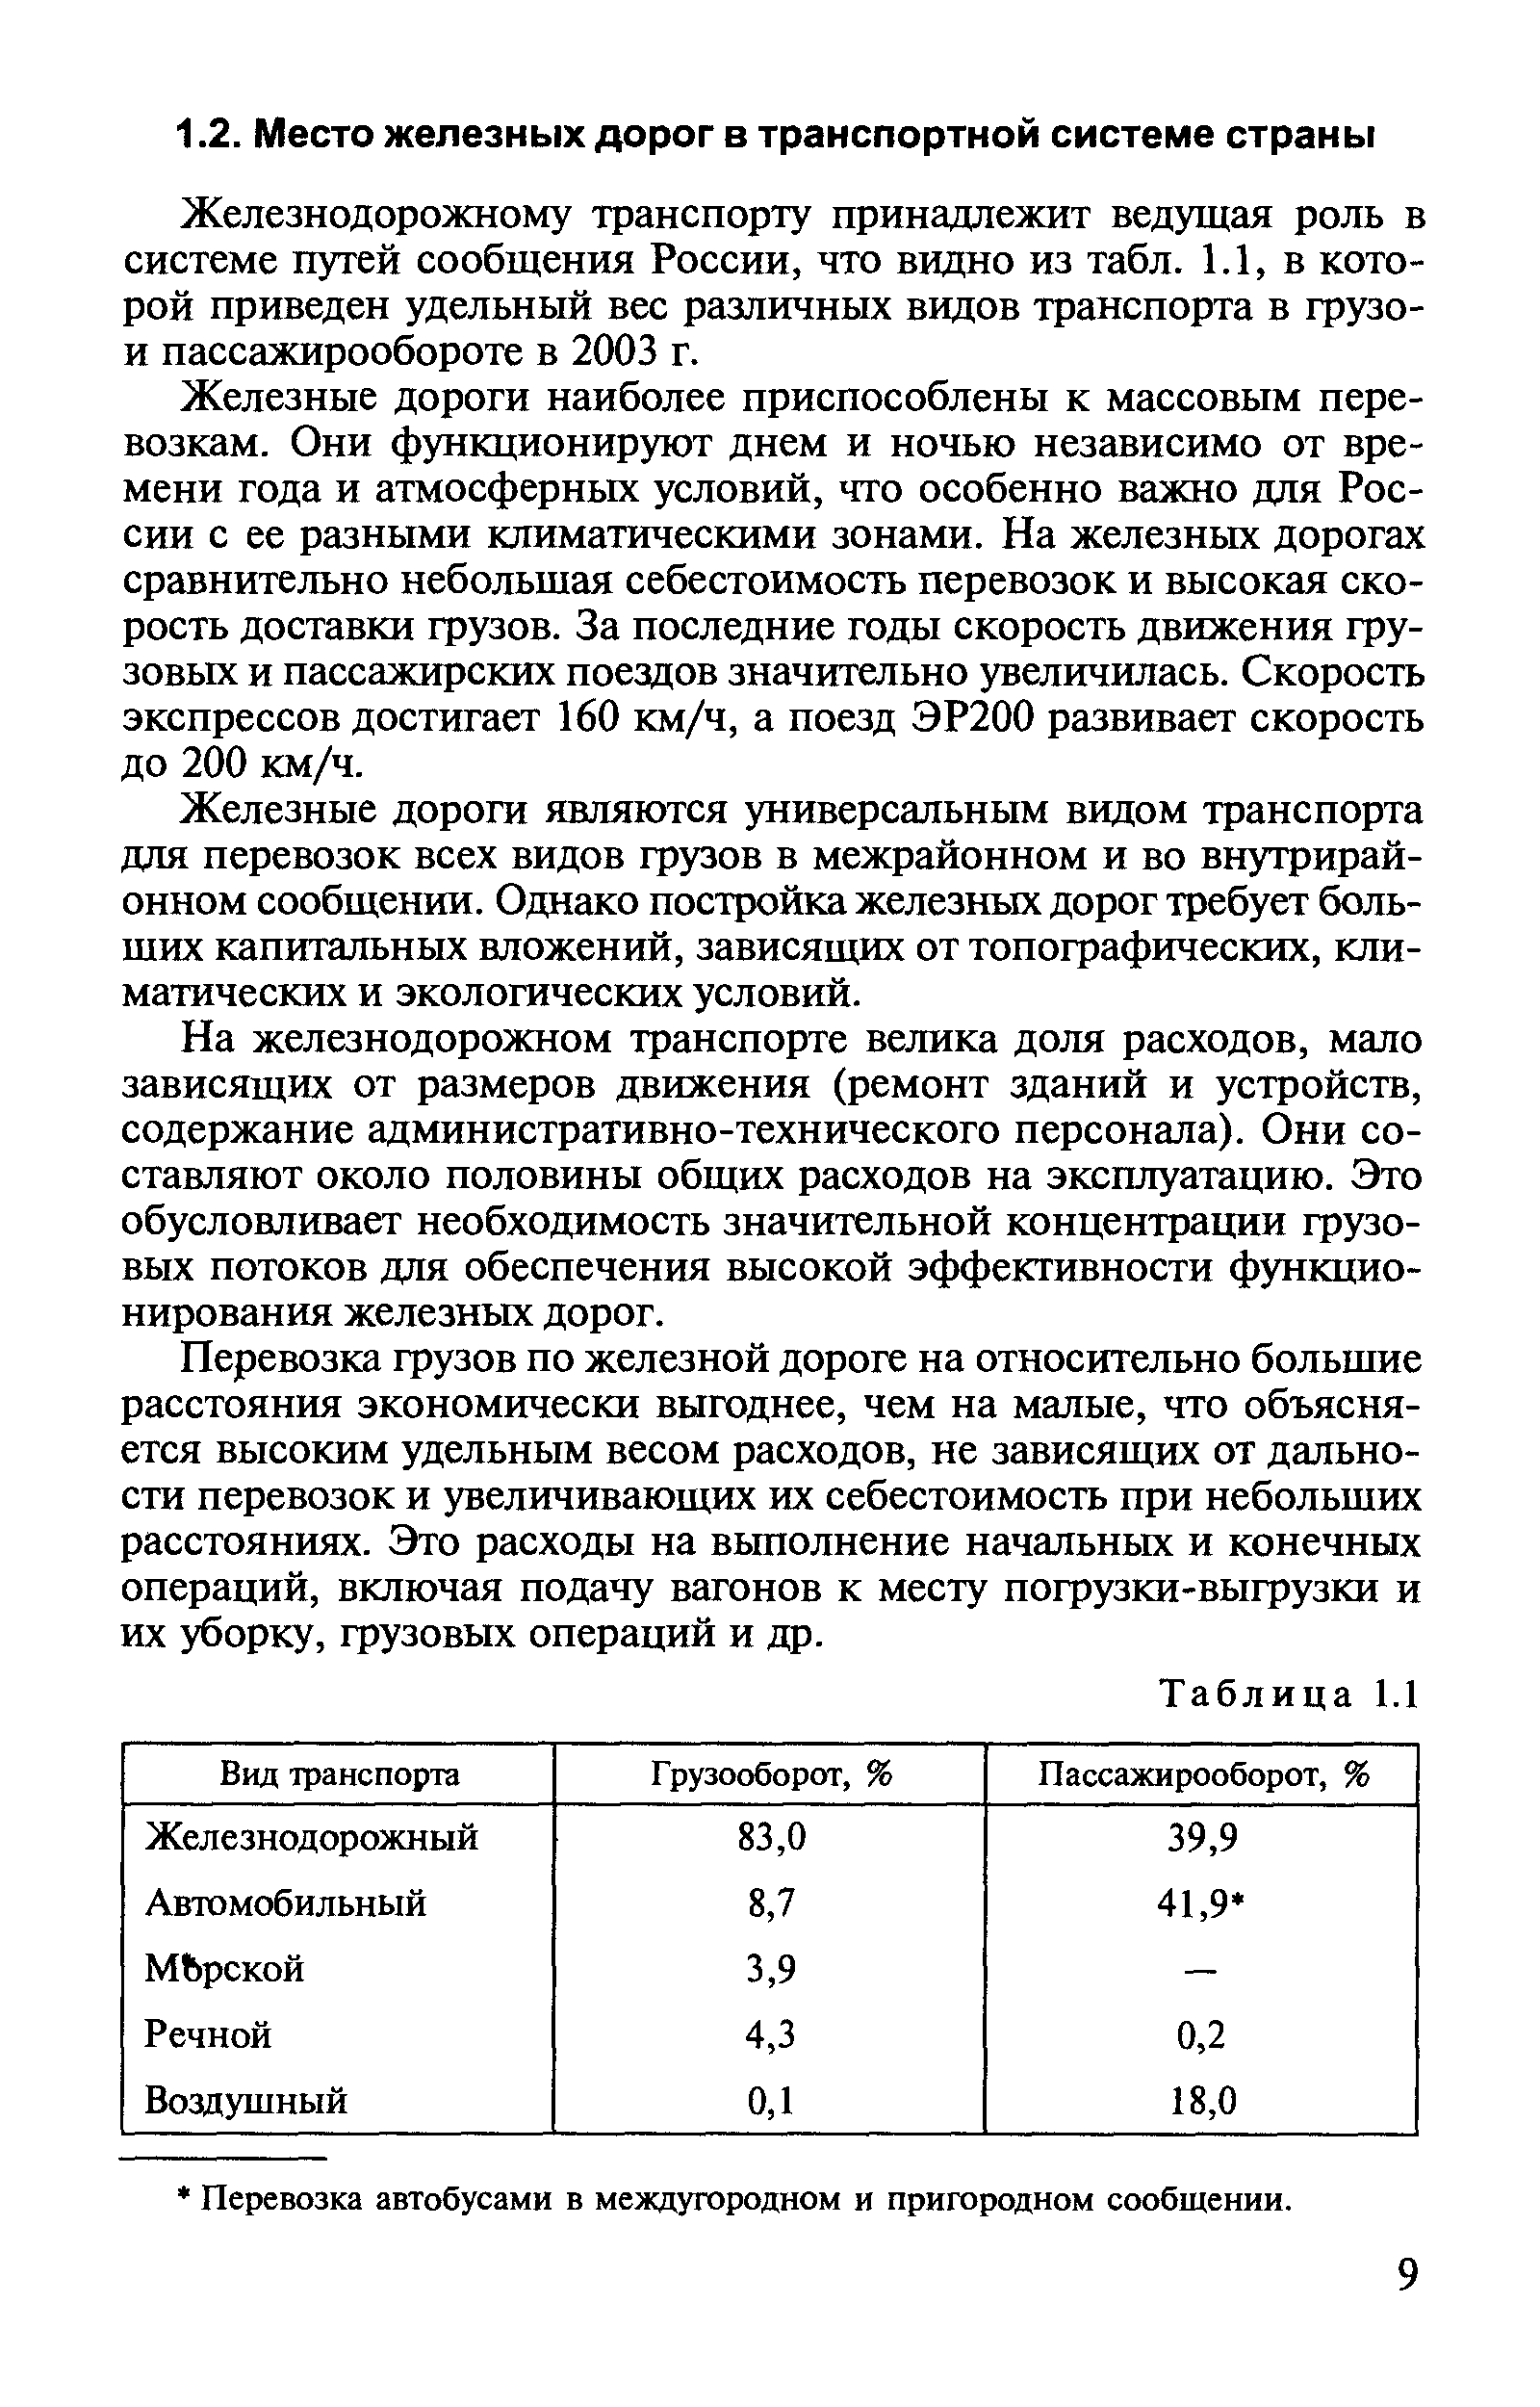 Железнодорожному транспорту принадлежит ведущая роль в системе путей сообщения России, что видно из табл. 1.1, в которой приведен удельный вес различных видов транспорта в грузо-и пассажирообороте в 2003 г.
